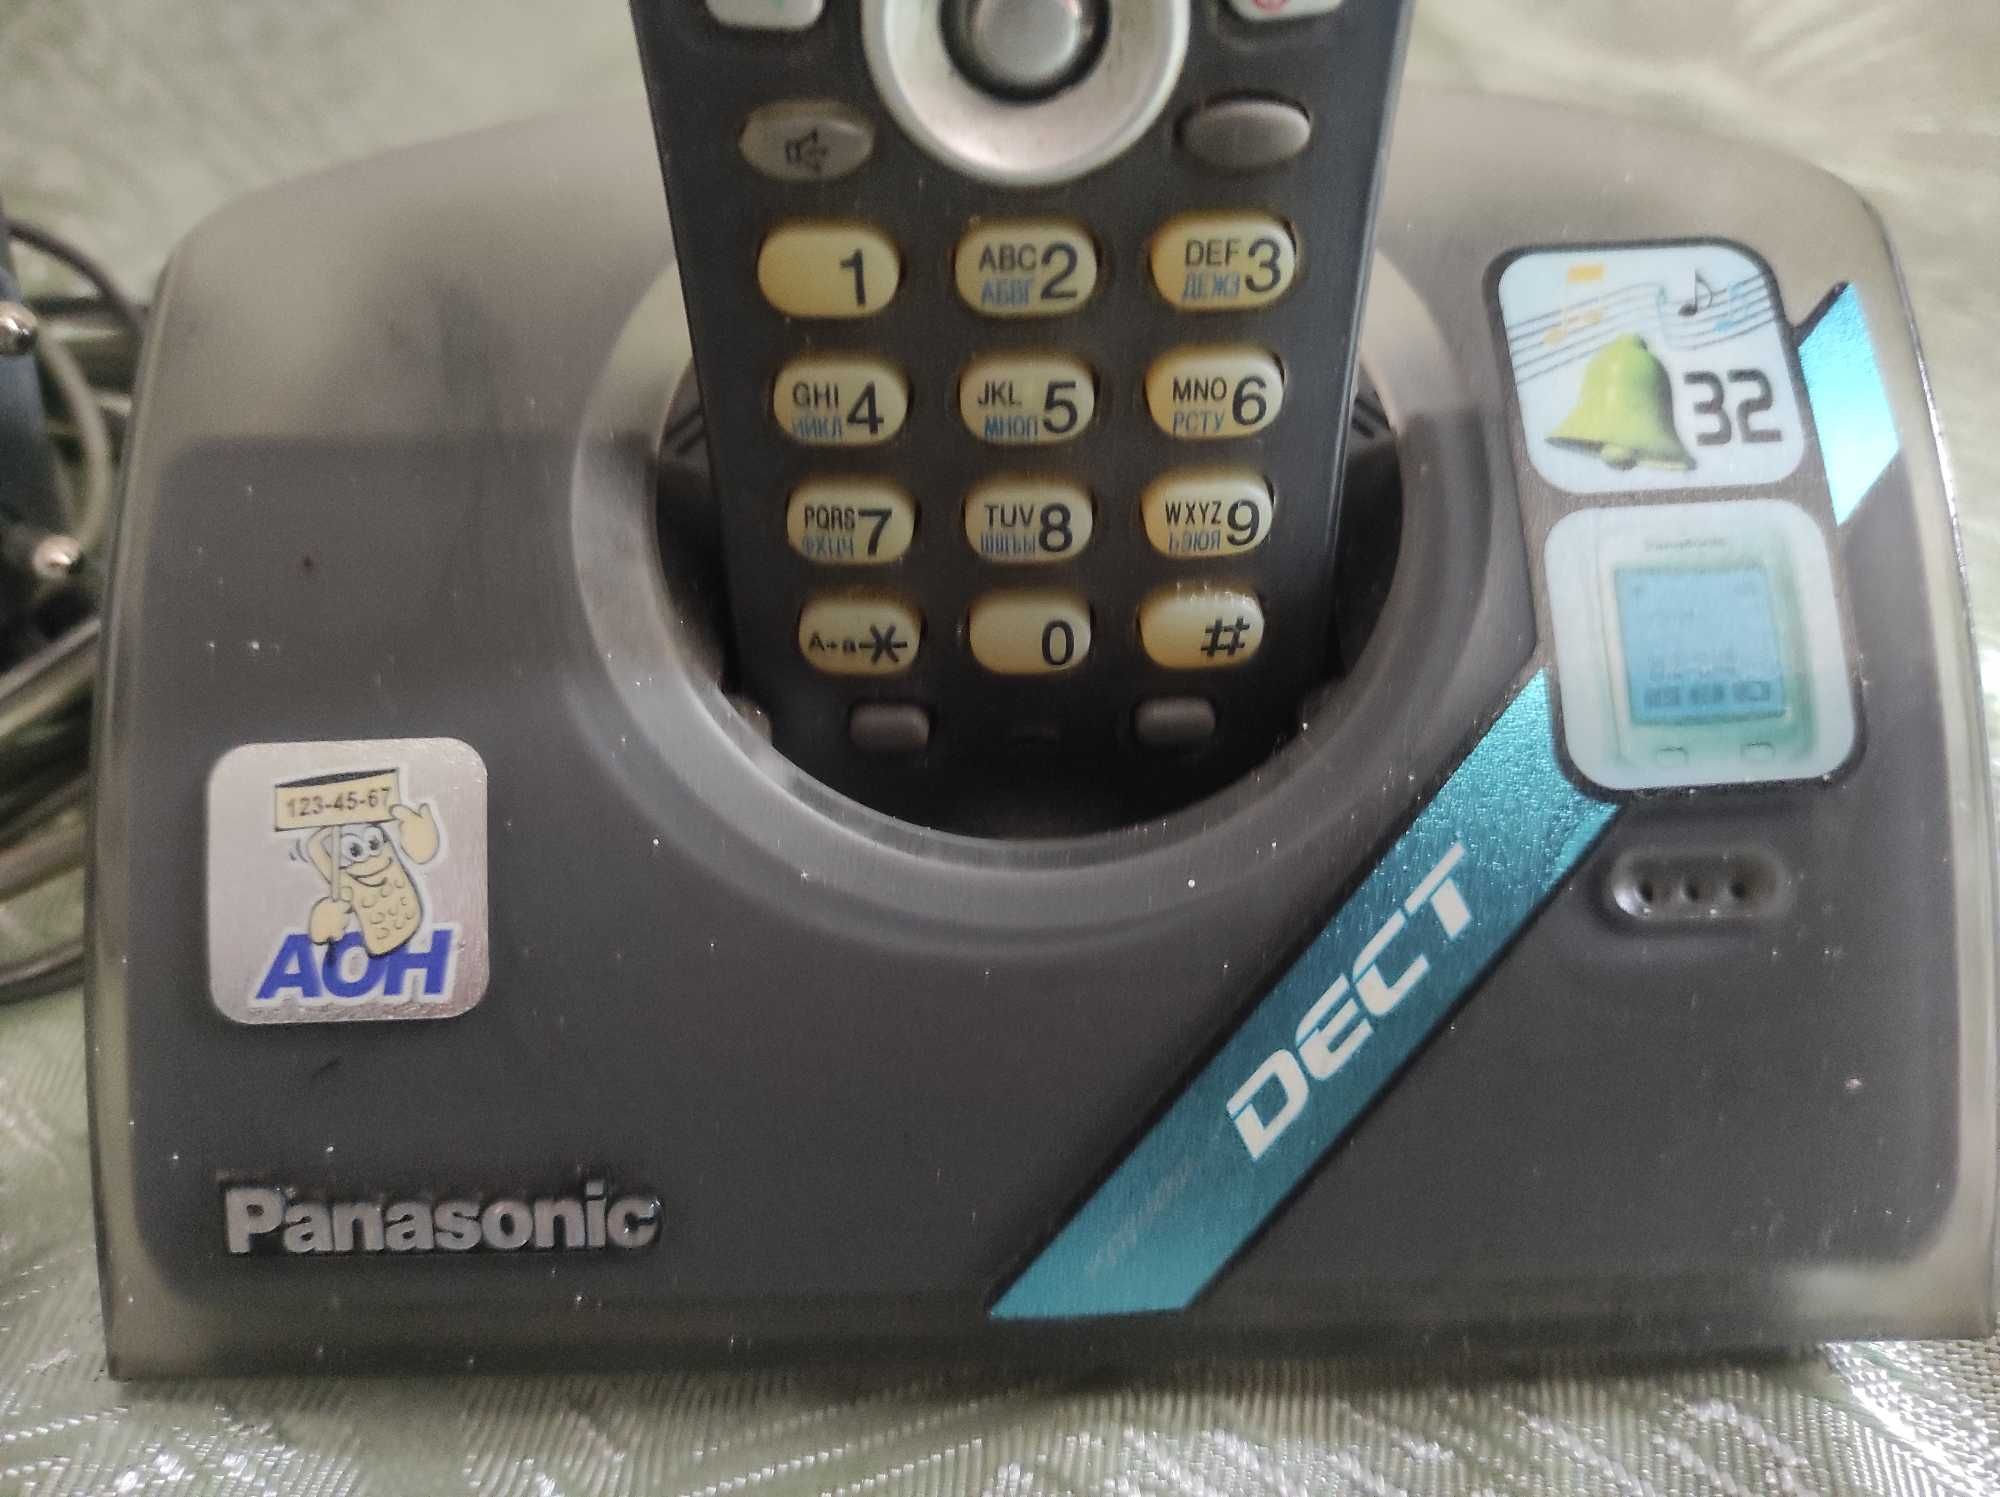 Продам Цифровий бездротовий телефон Panasonic з кольоровим екраном